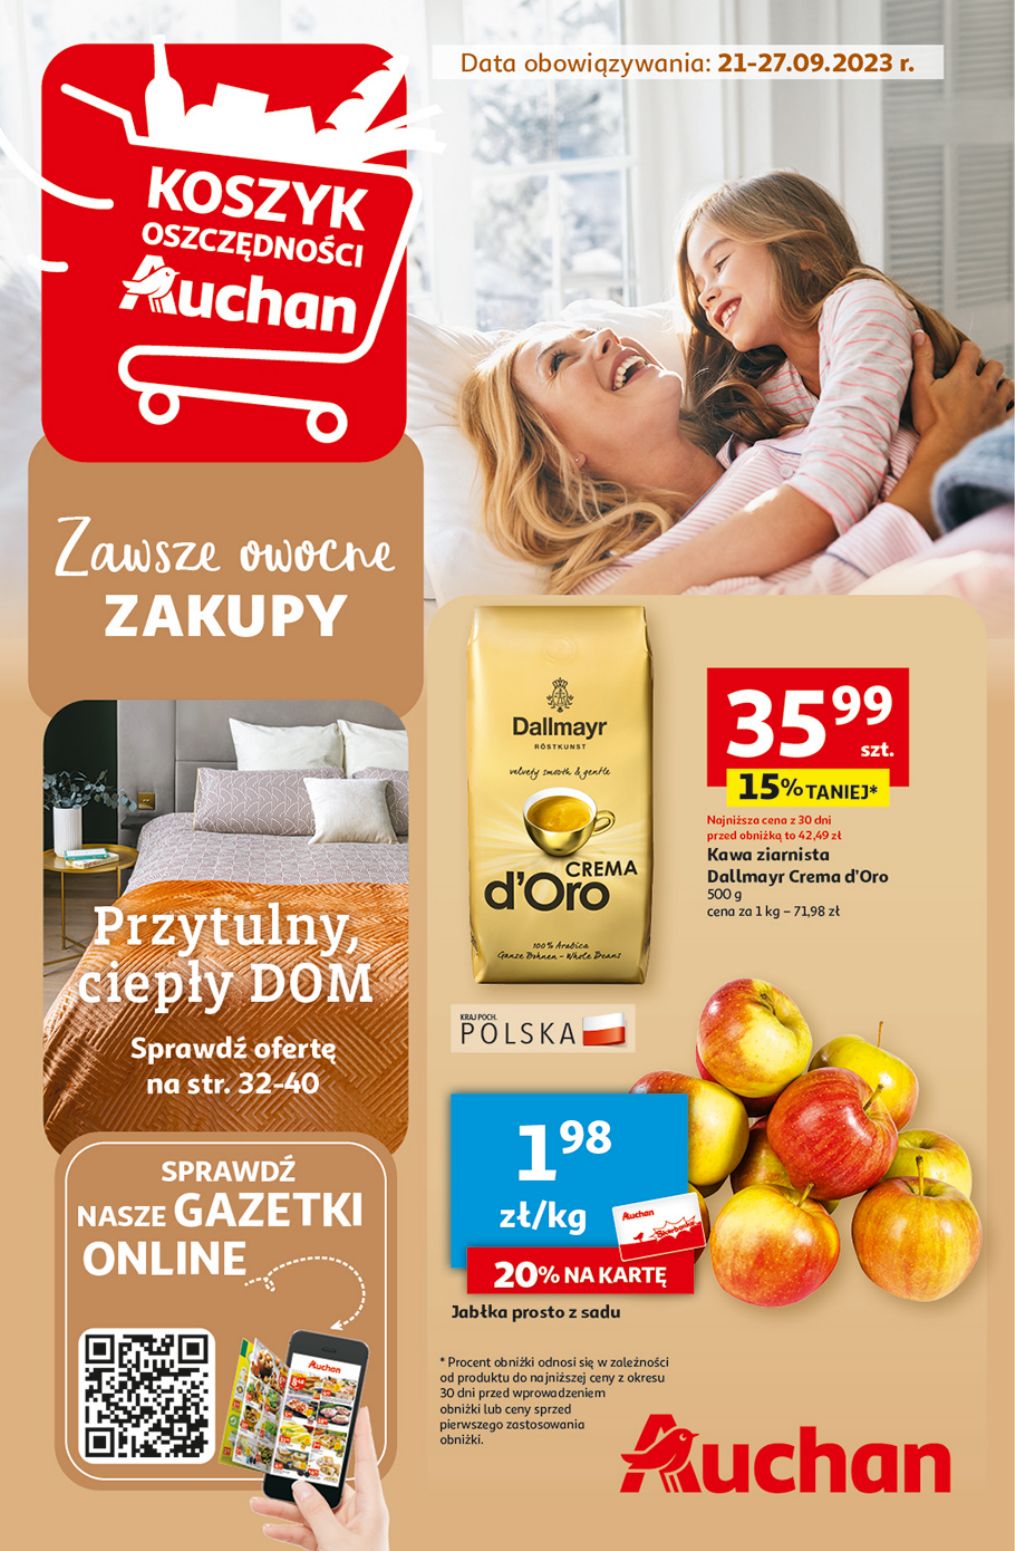 акційний каталог Auchan – Zawsze owocne ZAKUPY - Сторінка {{page}}